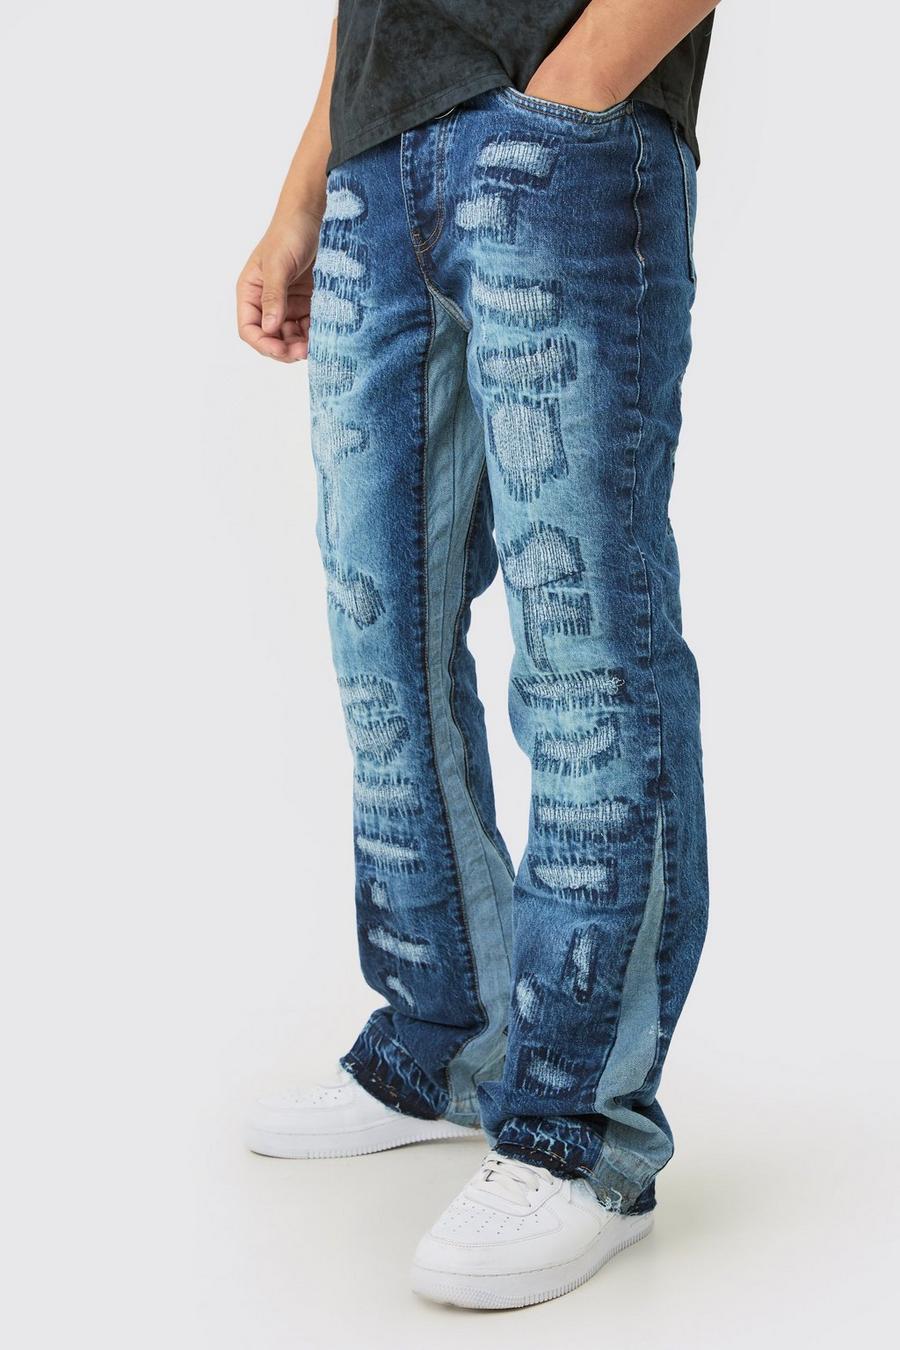 Indigo Gescheurde Slim Fit Flared Jeans